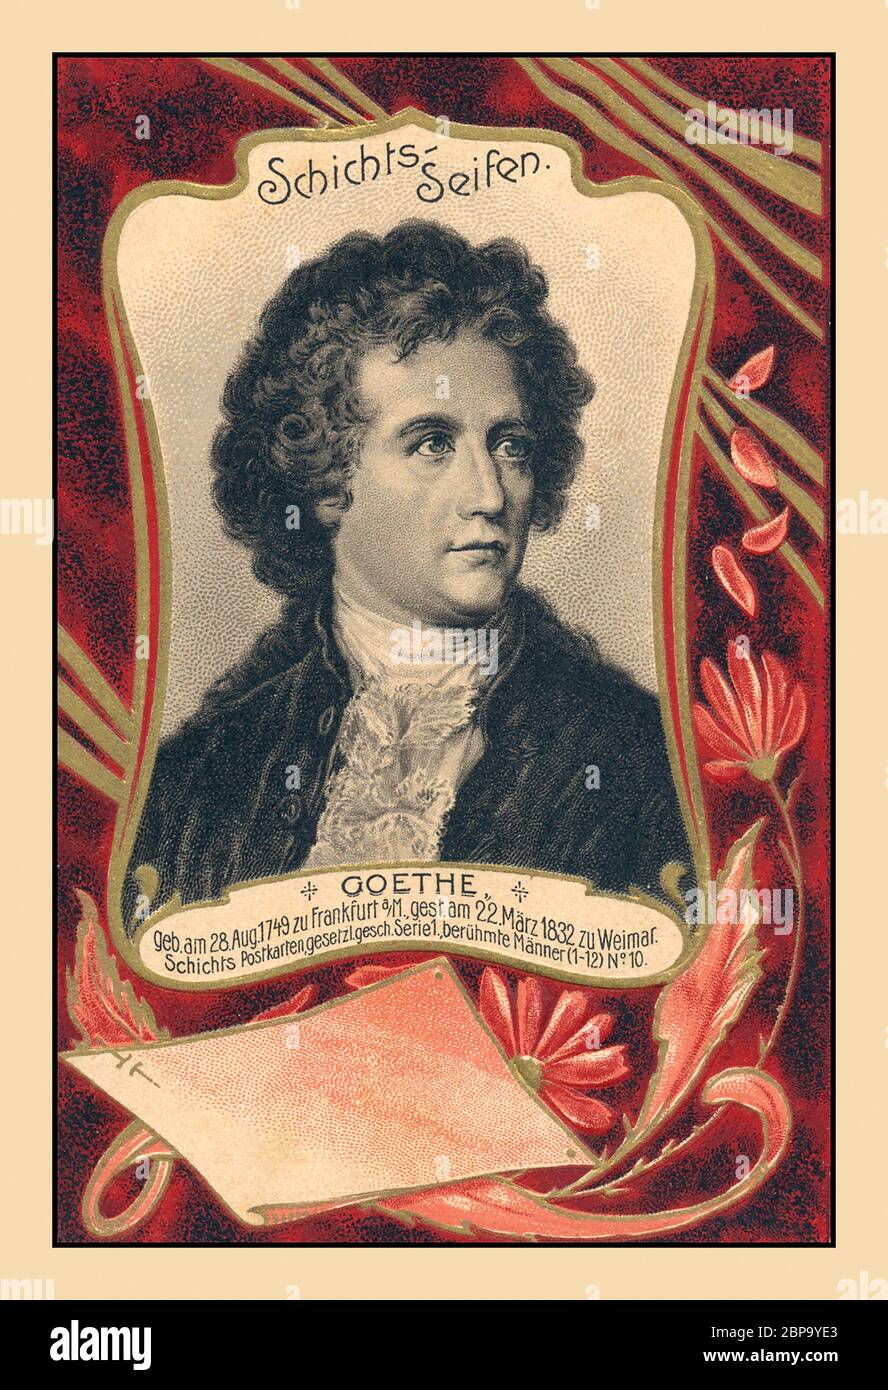 GOETHE Johann Wolfgang von Goethe Archiv historische Postkarte. Deutscher Schriftsteller und Staatsmann, der als größte deutsche literarische Figur der Neuzeit gilt. 28. August 1749 – 22. März 1832 Postkarte als Hommage an sein abwechslungsreiches Leben Stockfoto